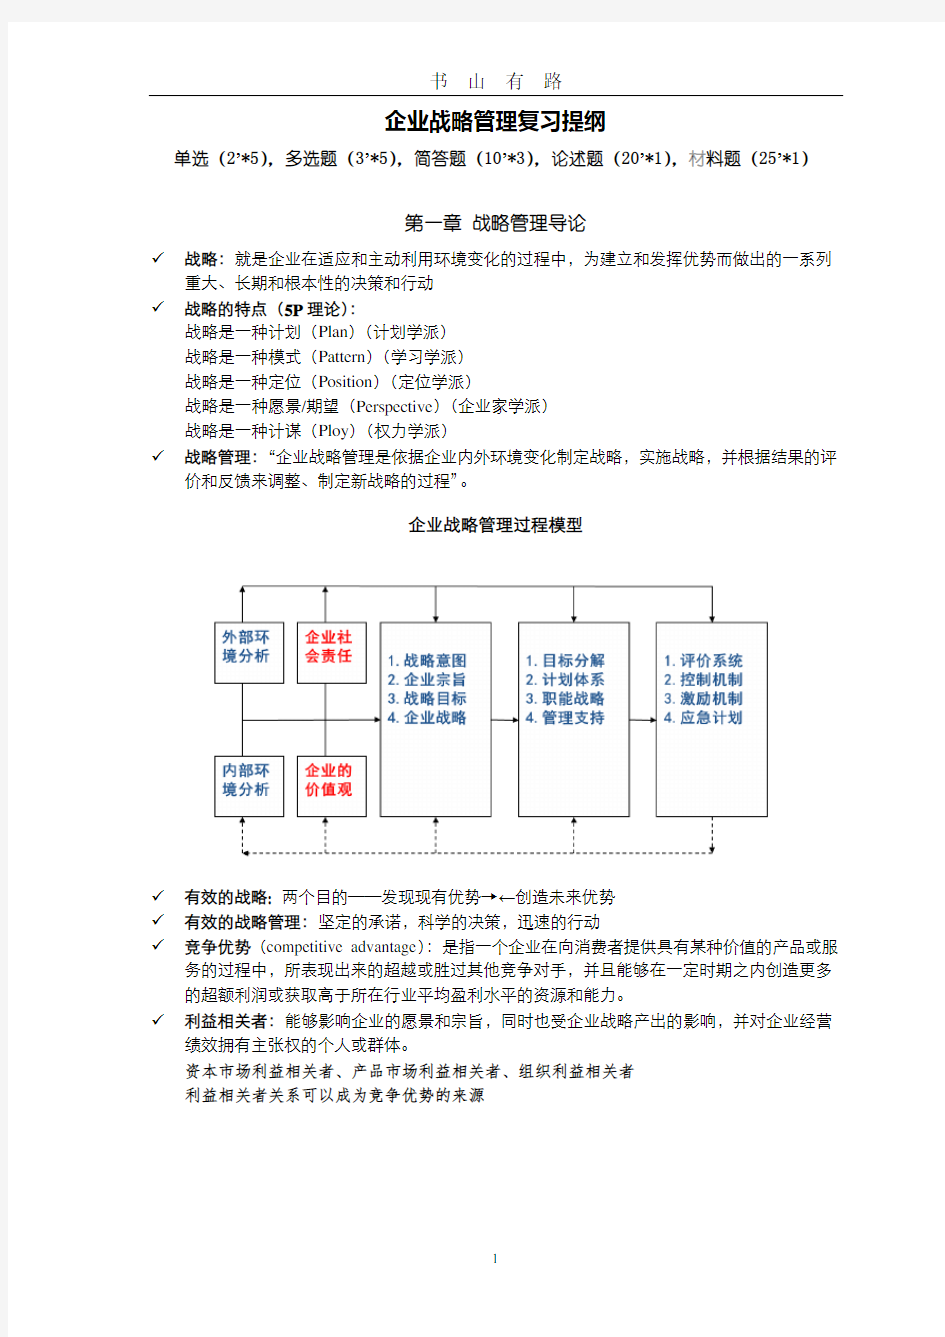 蓝海林-企业战略管理-期末复习提纲PDF.pdf